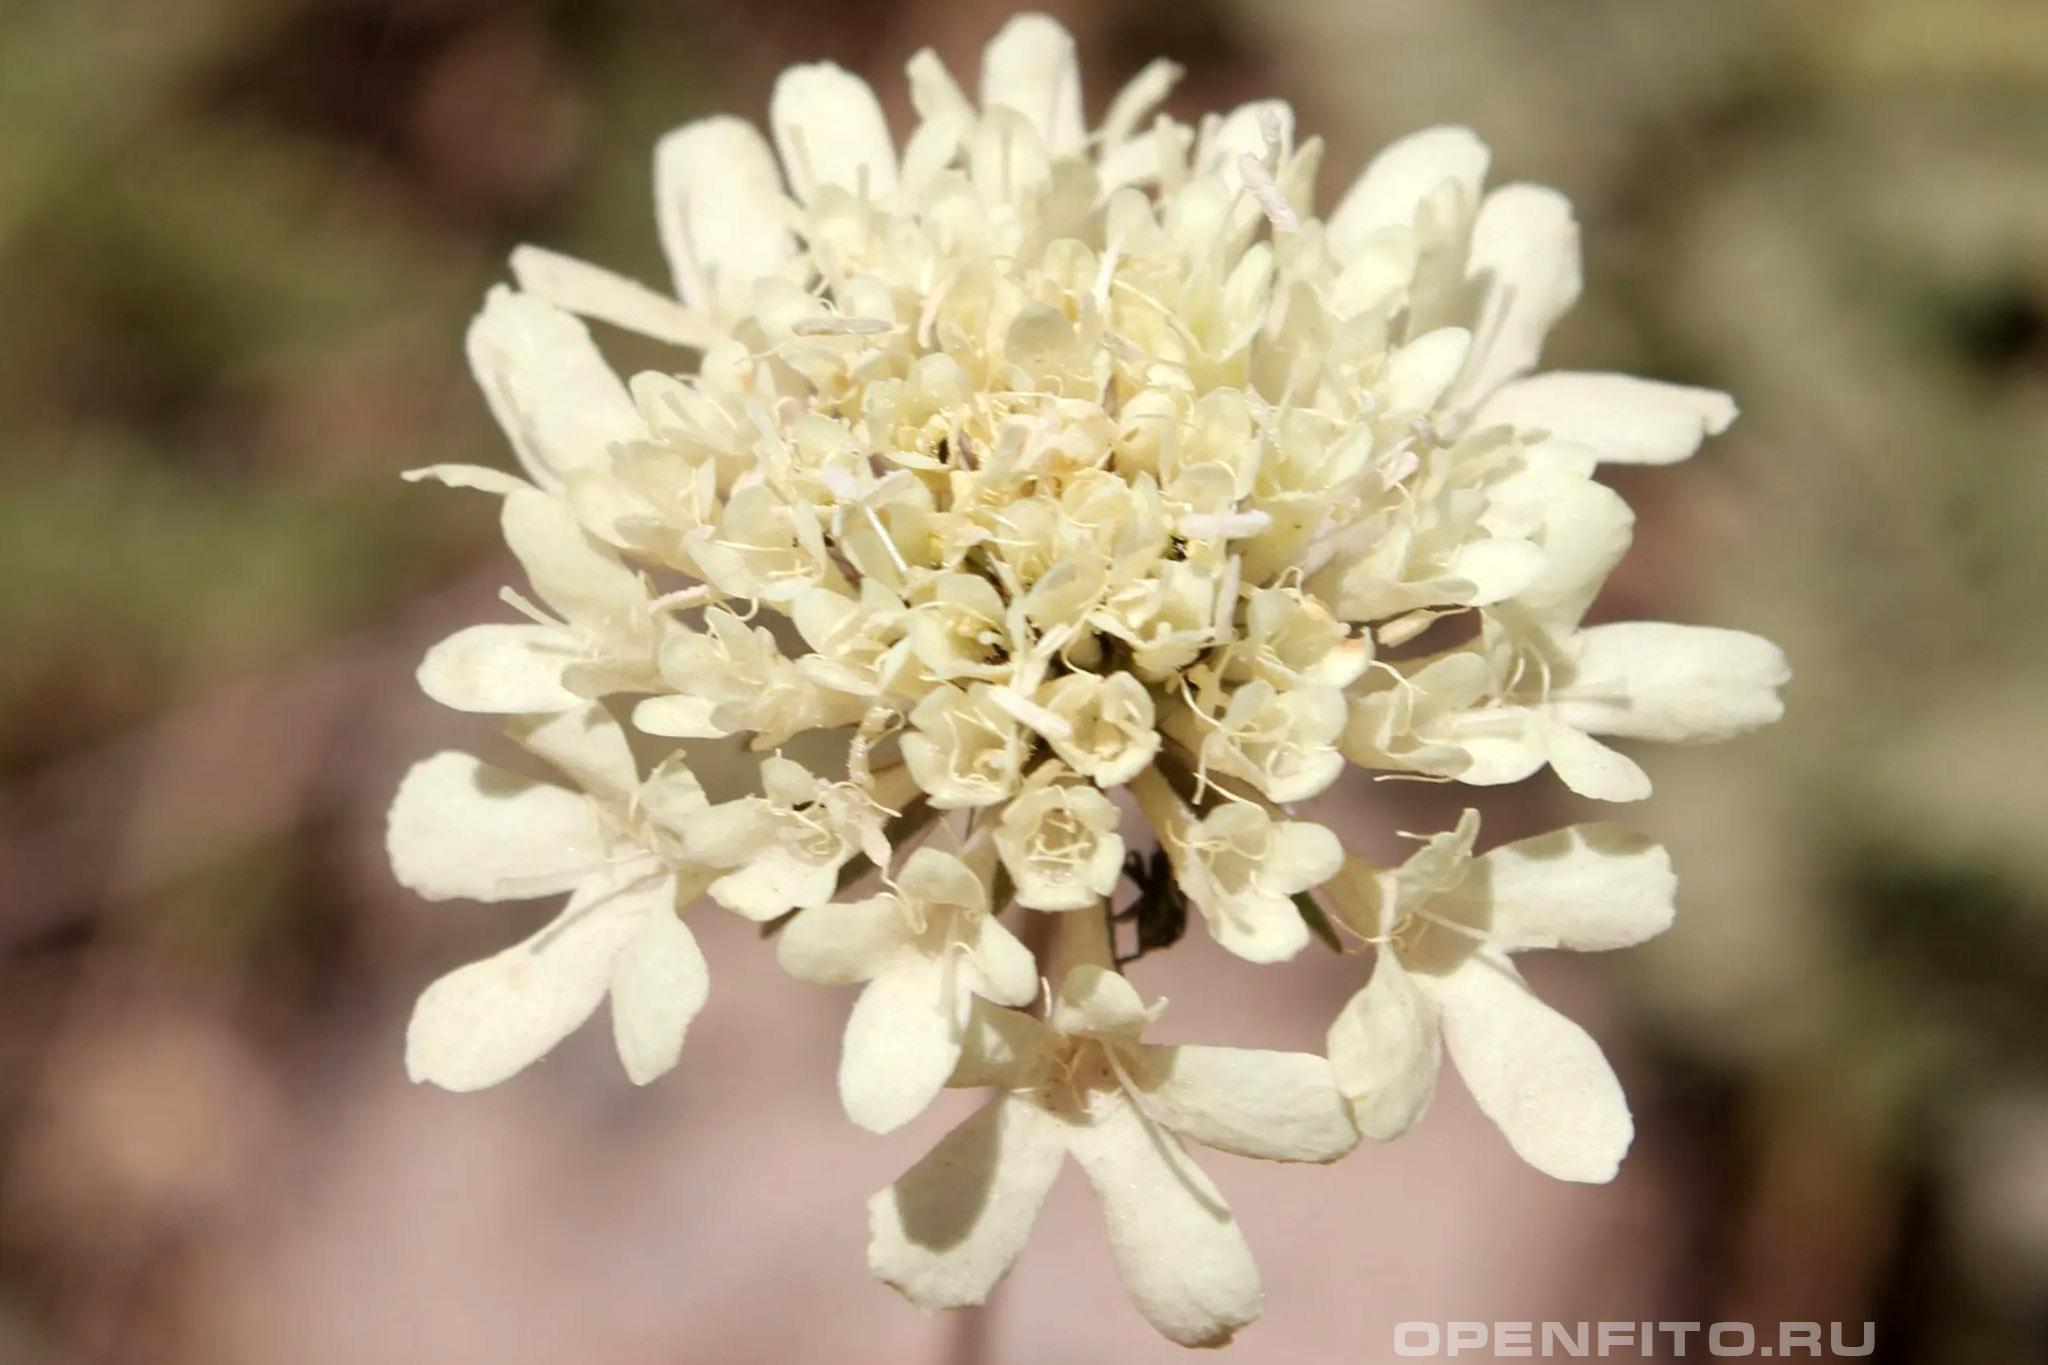 Скабиоза бледно-желтая - фотография цветка